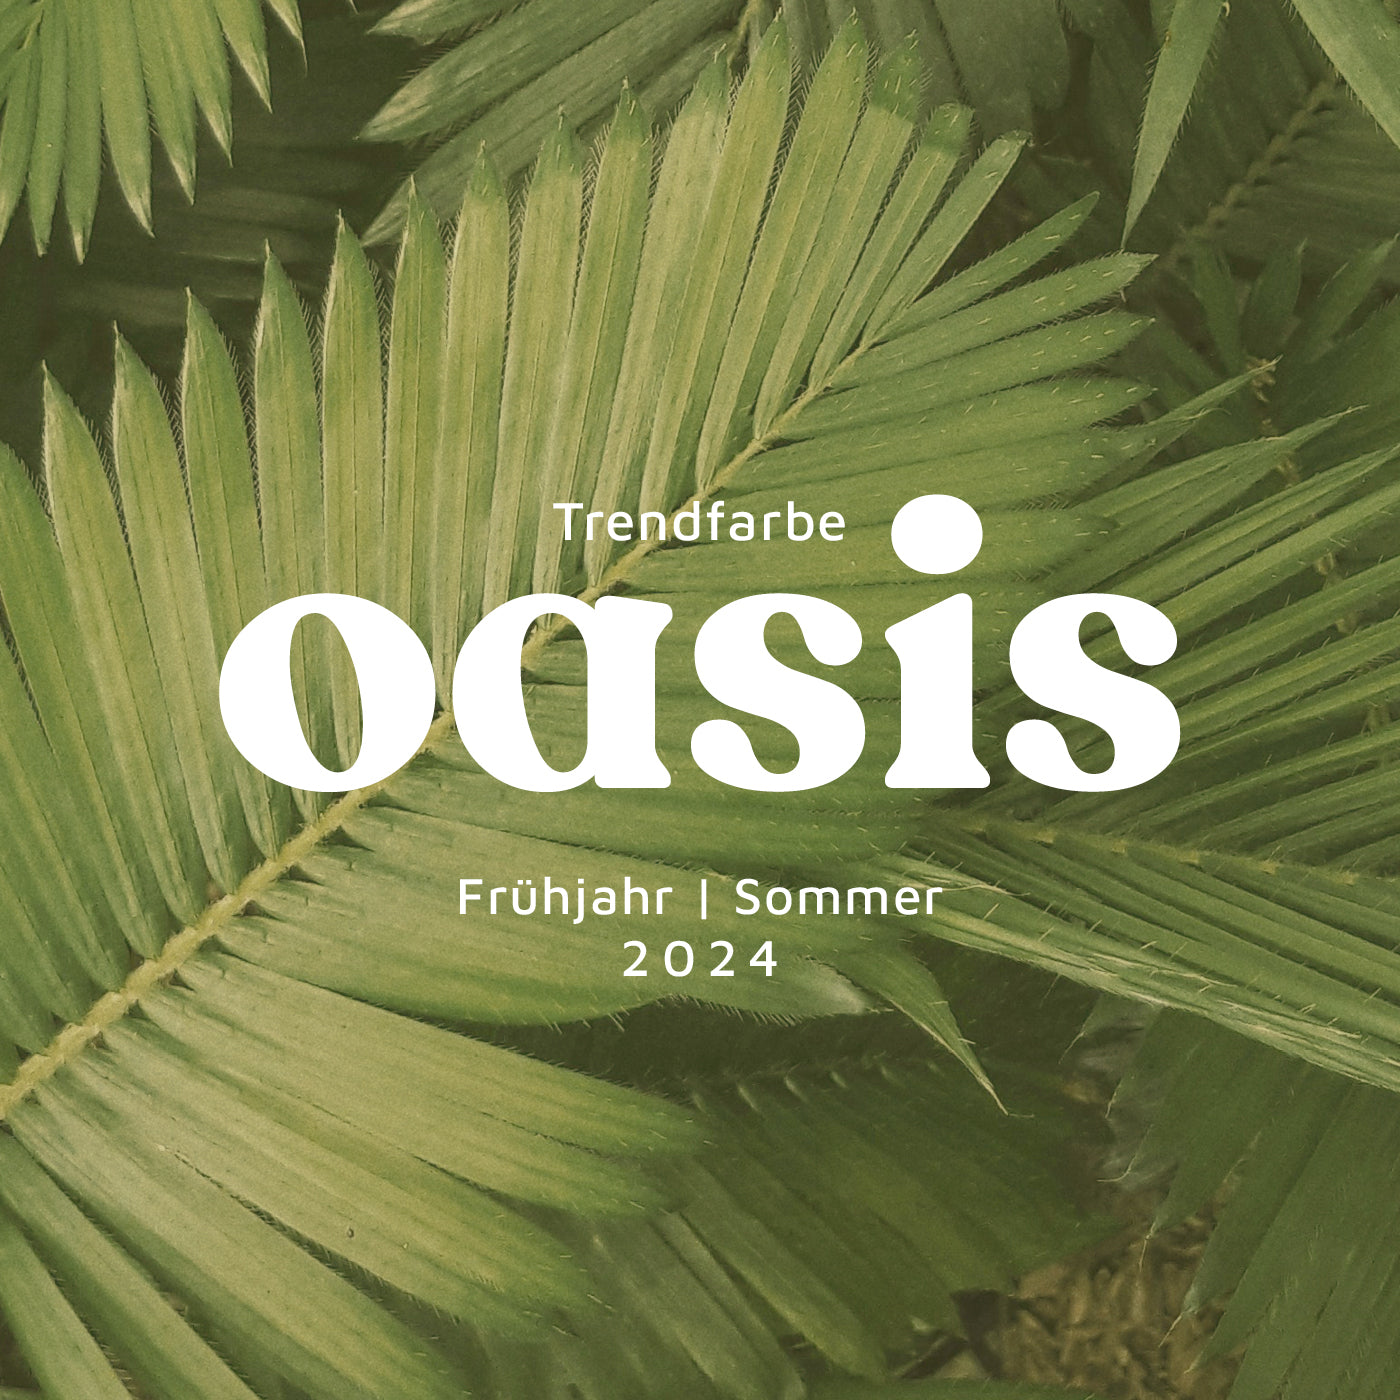 Oasis: Das Erwachen des Frühlings in Hellem Grün – unsere Trendfarbe F/S 2024 🌿